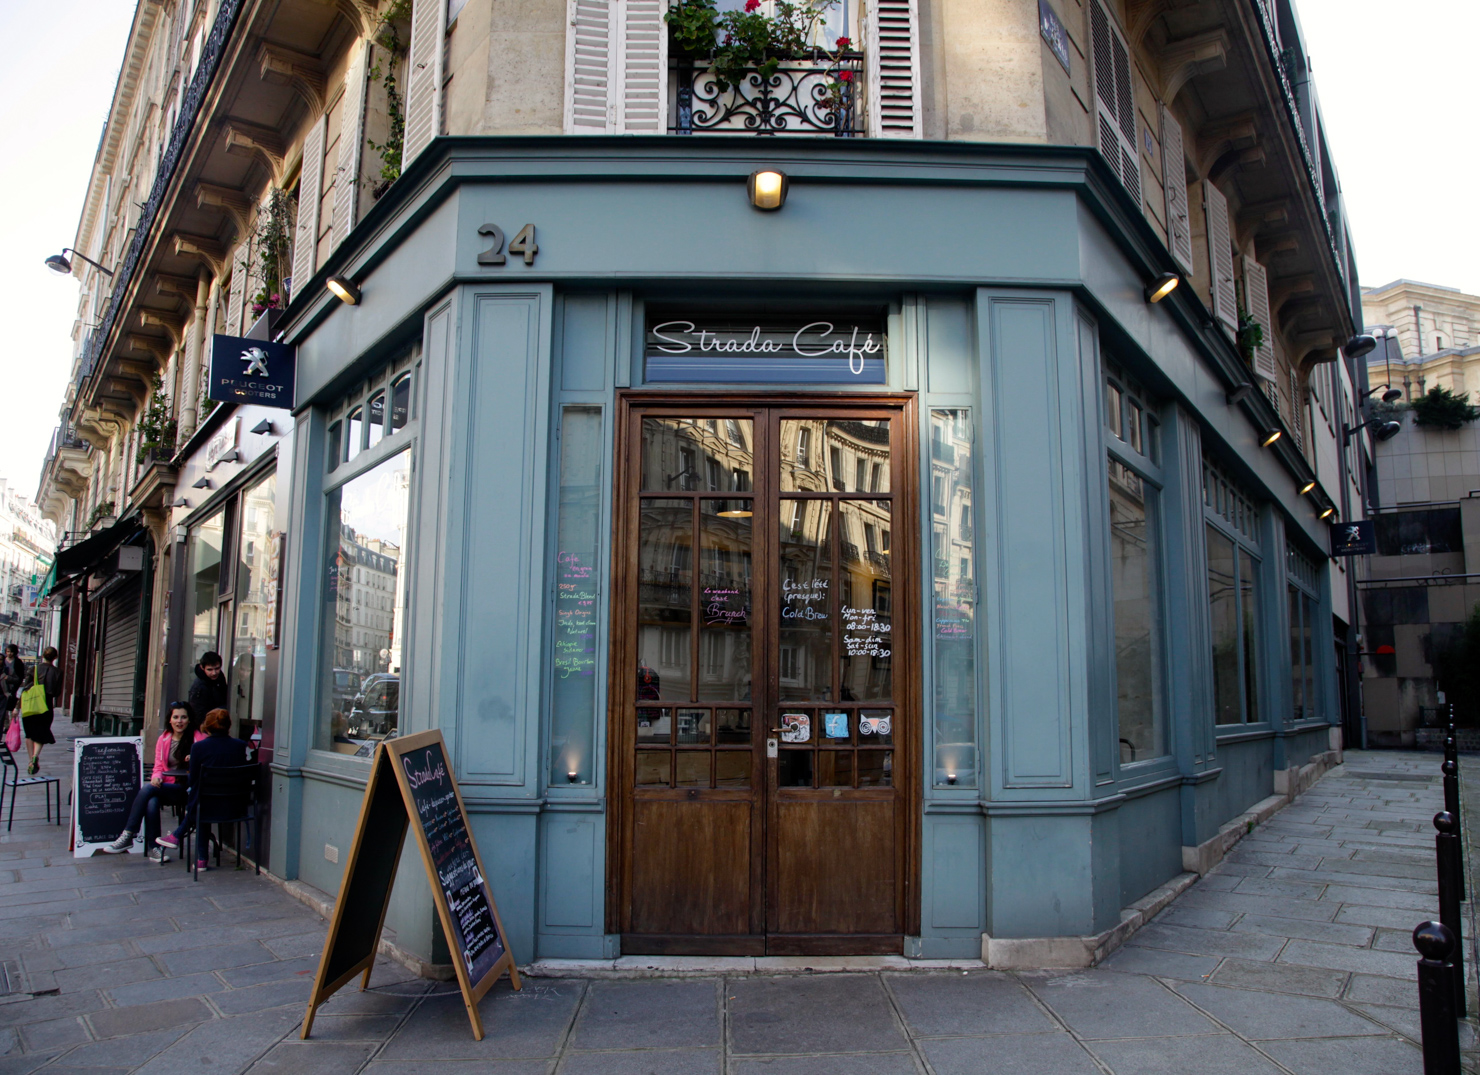 strada cafe left bank paris coffee sprudge